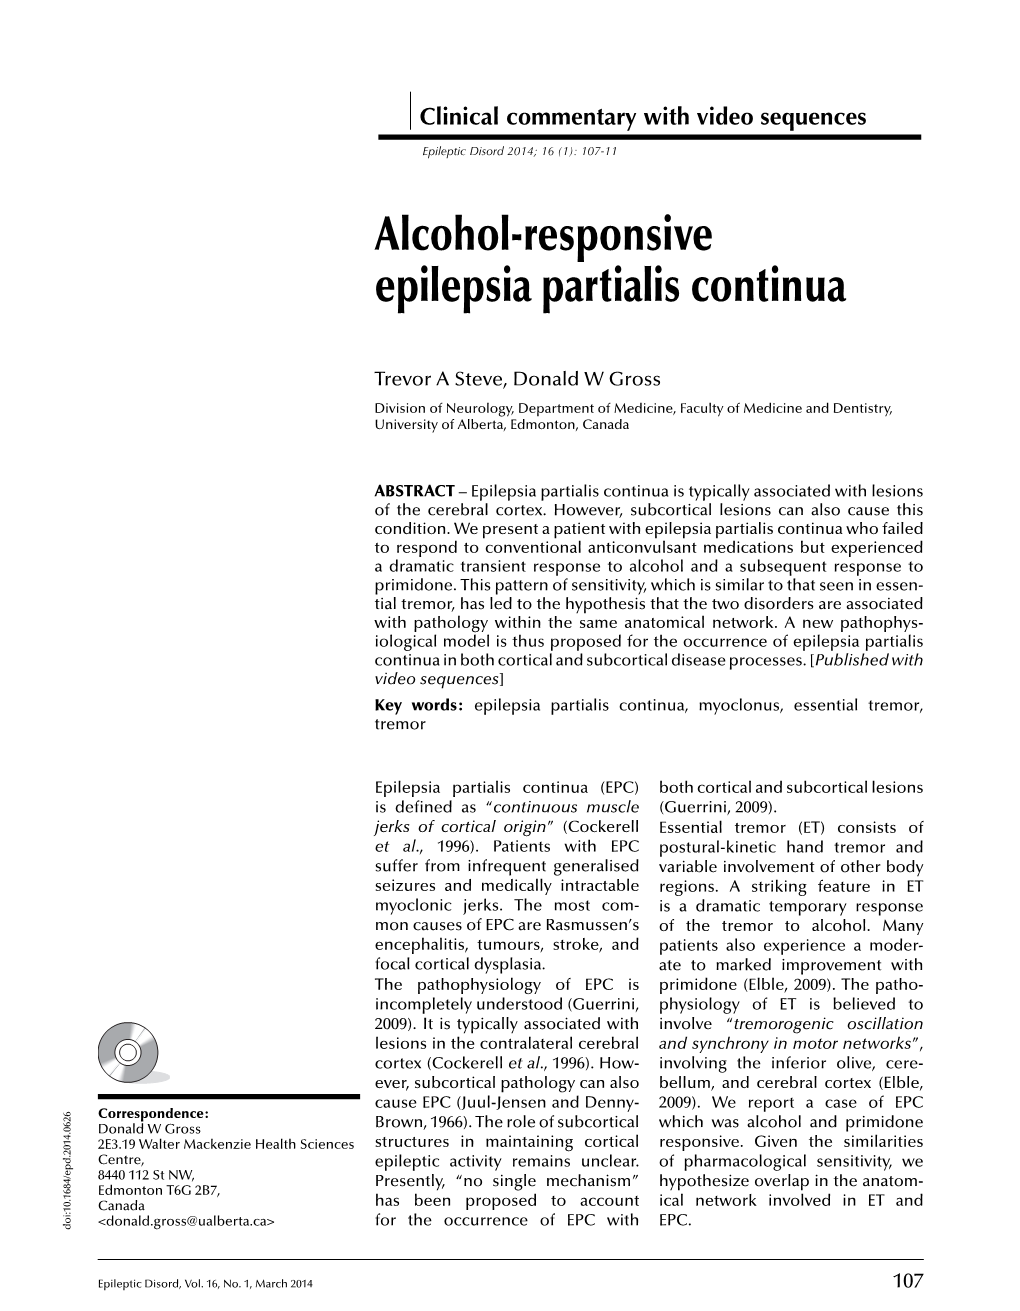 Alcohol-Responsive Epilepsia Partialis Continua